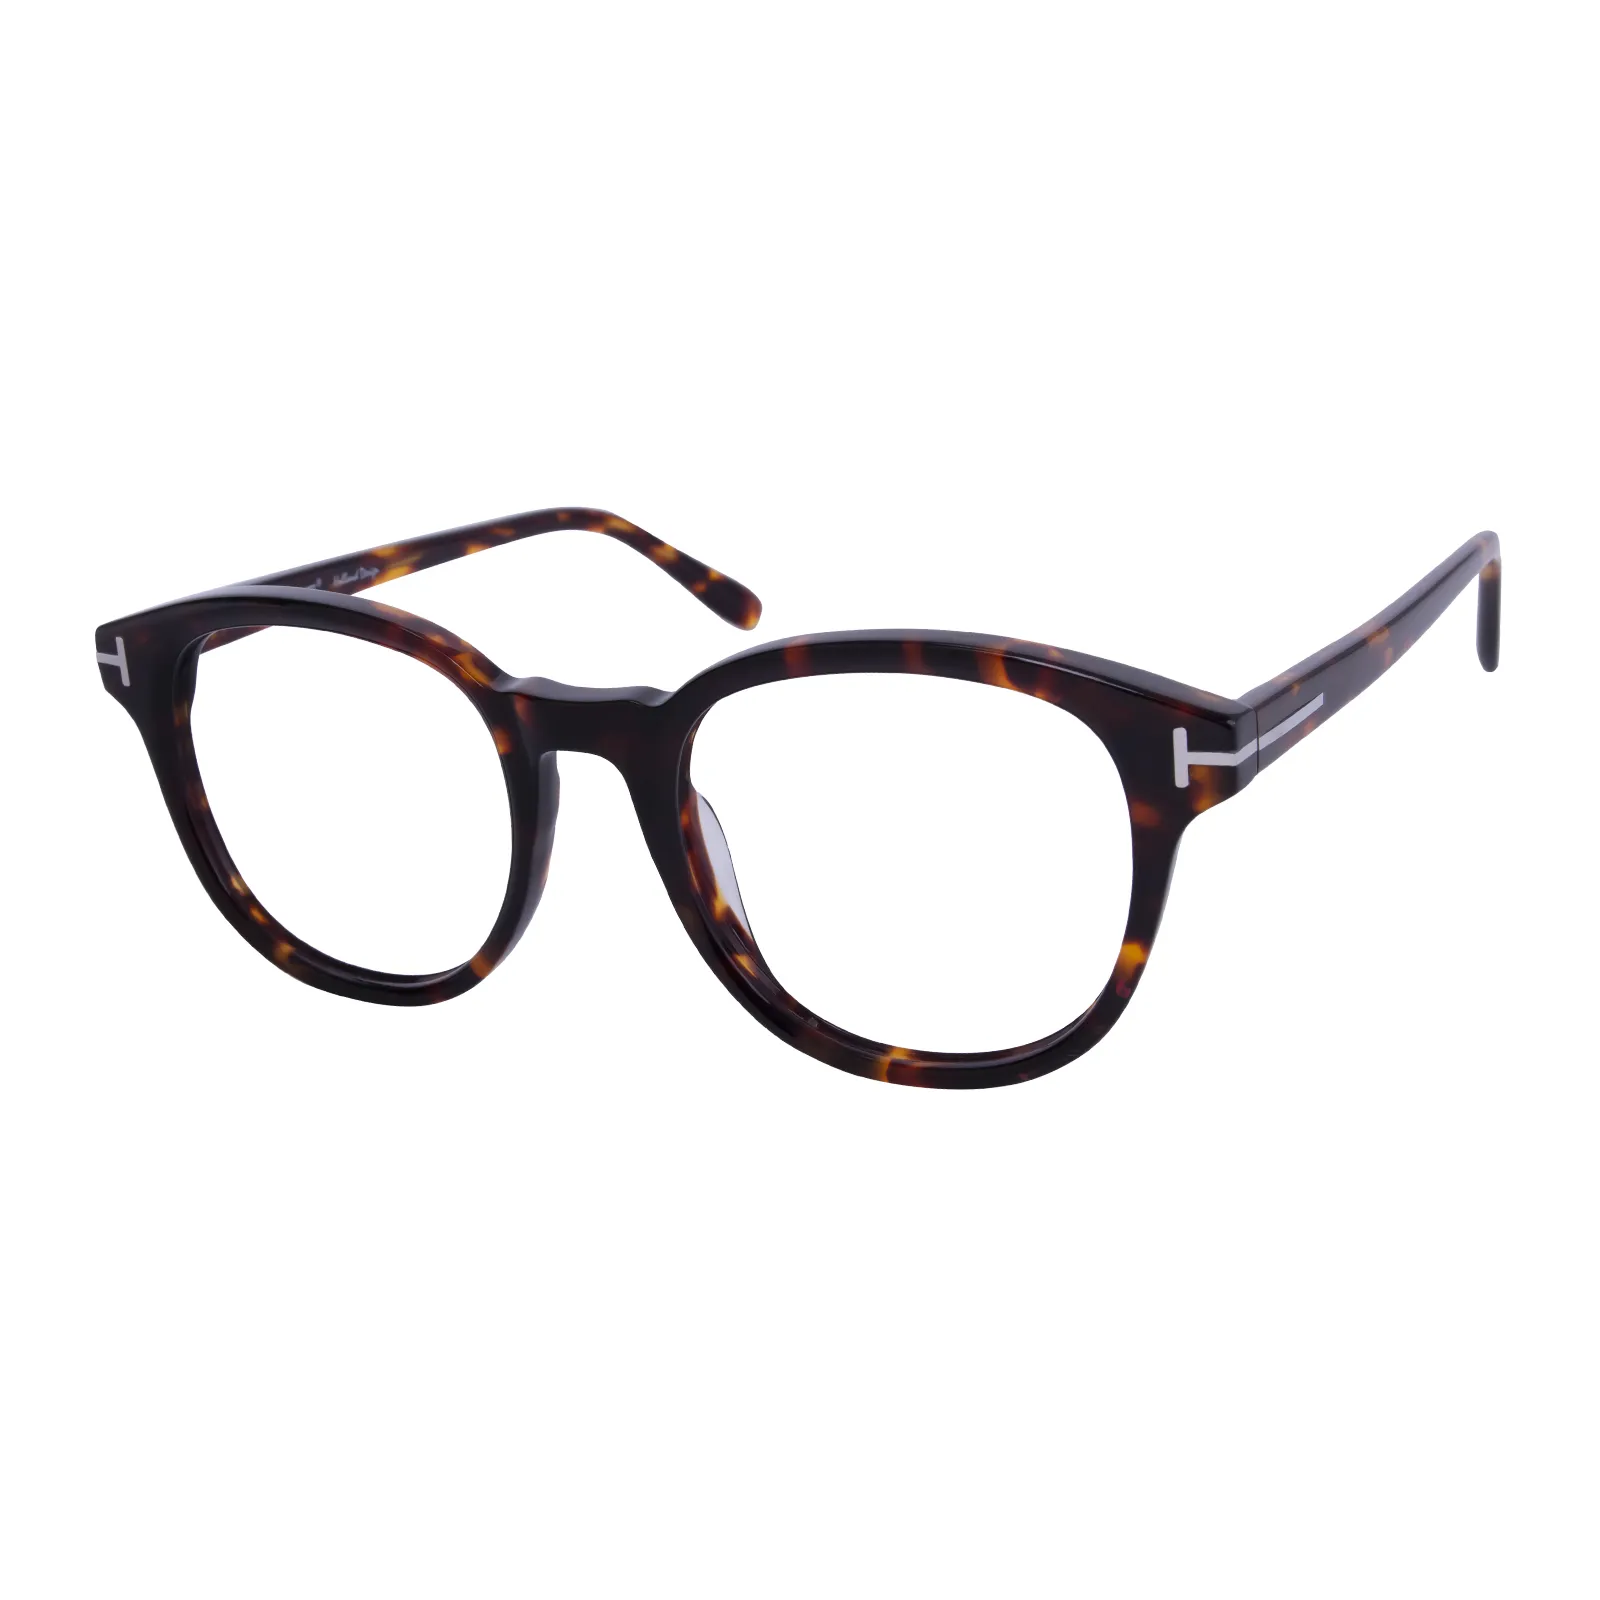 Averil - Square Tortoisehell Glasses for Men & Women